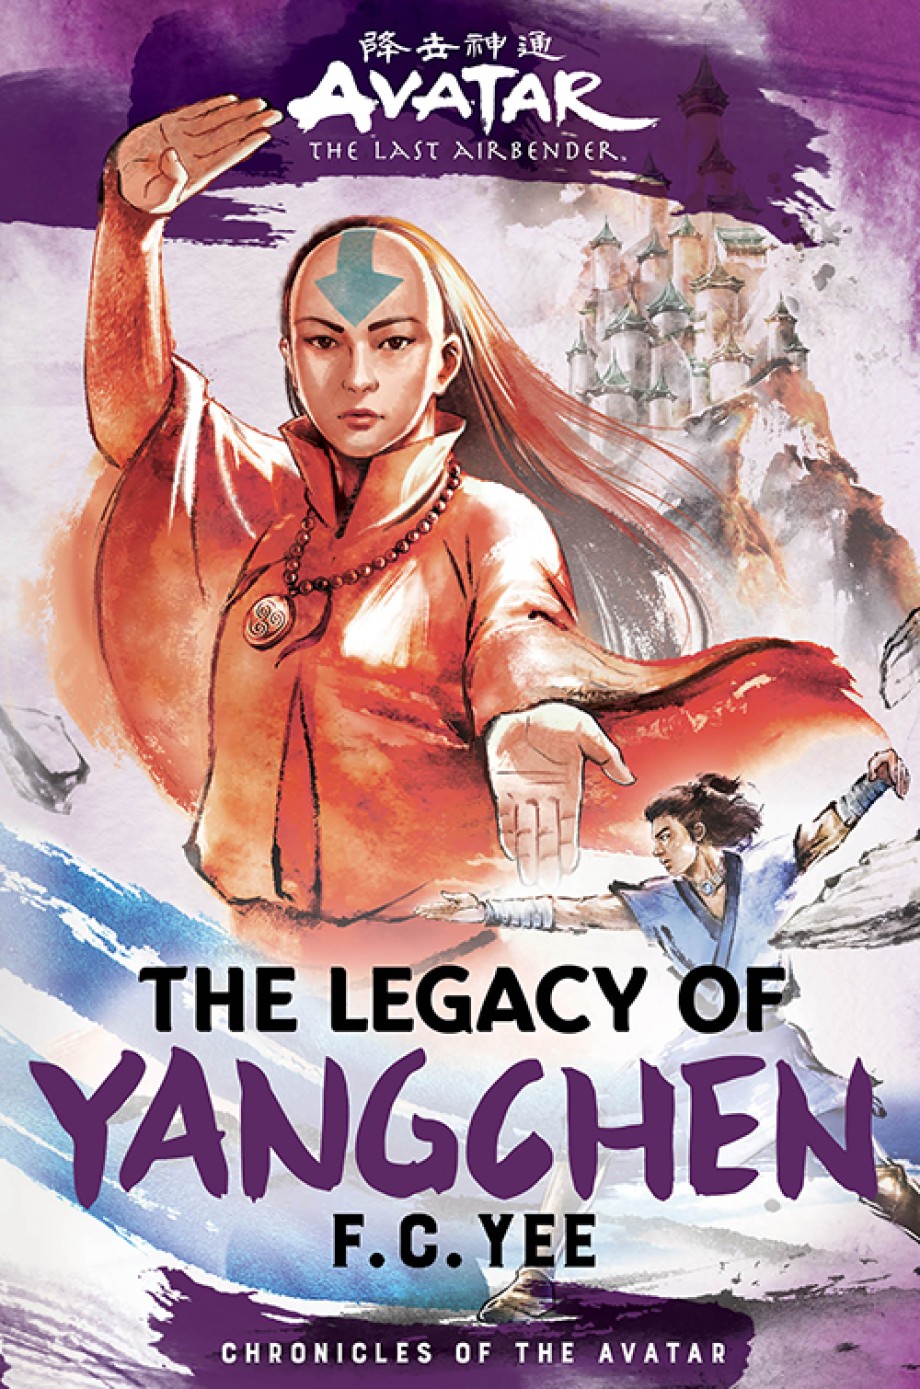 Yangchen